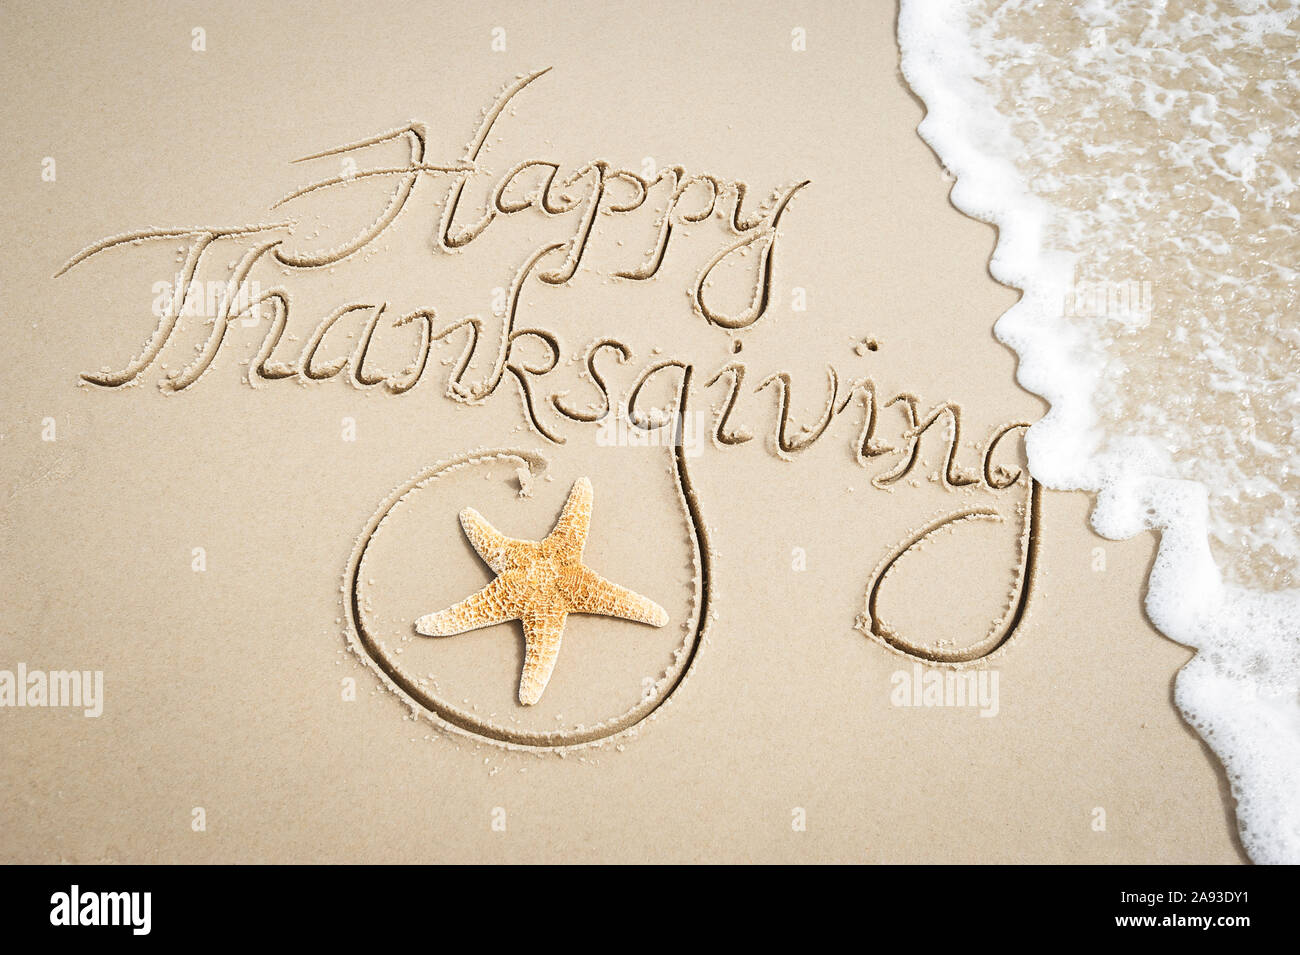 Happy Thanksgiving Nachricht handschriftlich auf glatten Sandstrand mit dekorativen Seesterne und entgegenkommende Welle Stockfoto